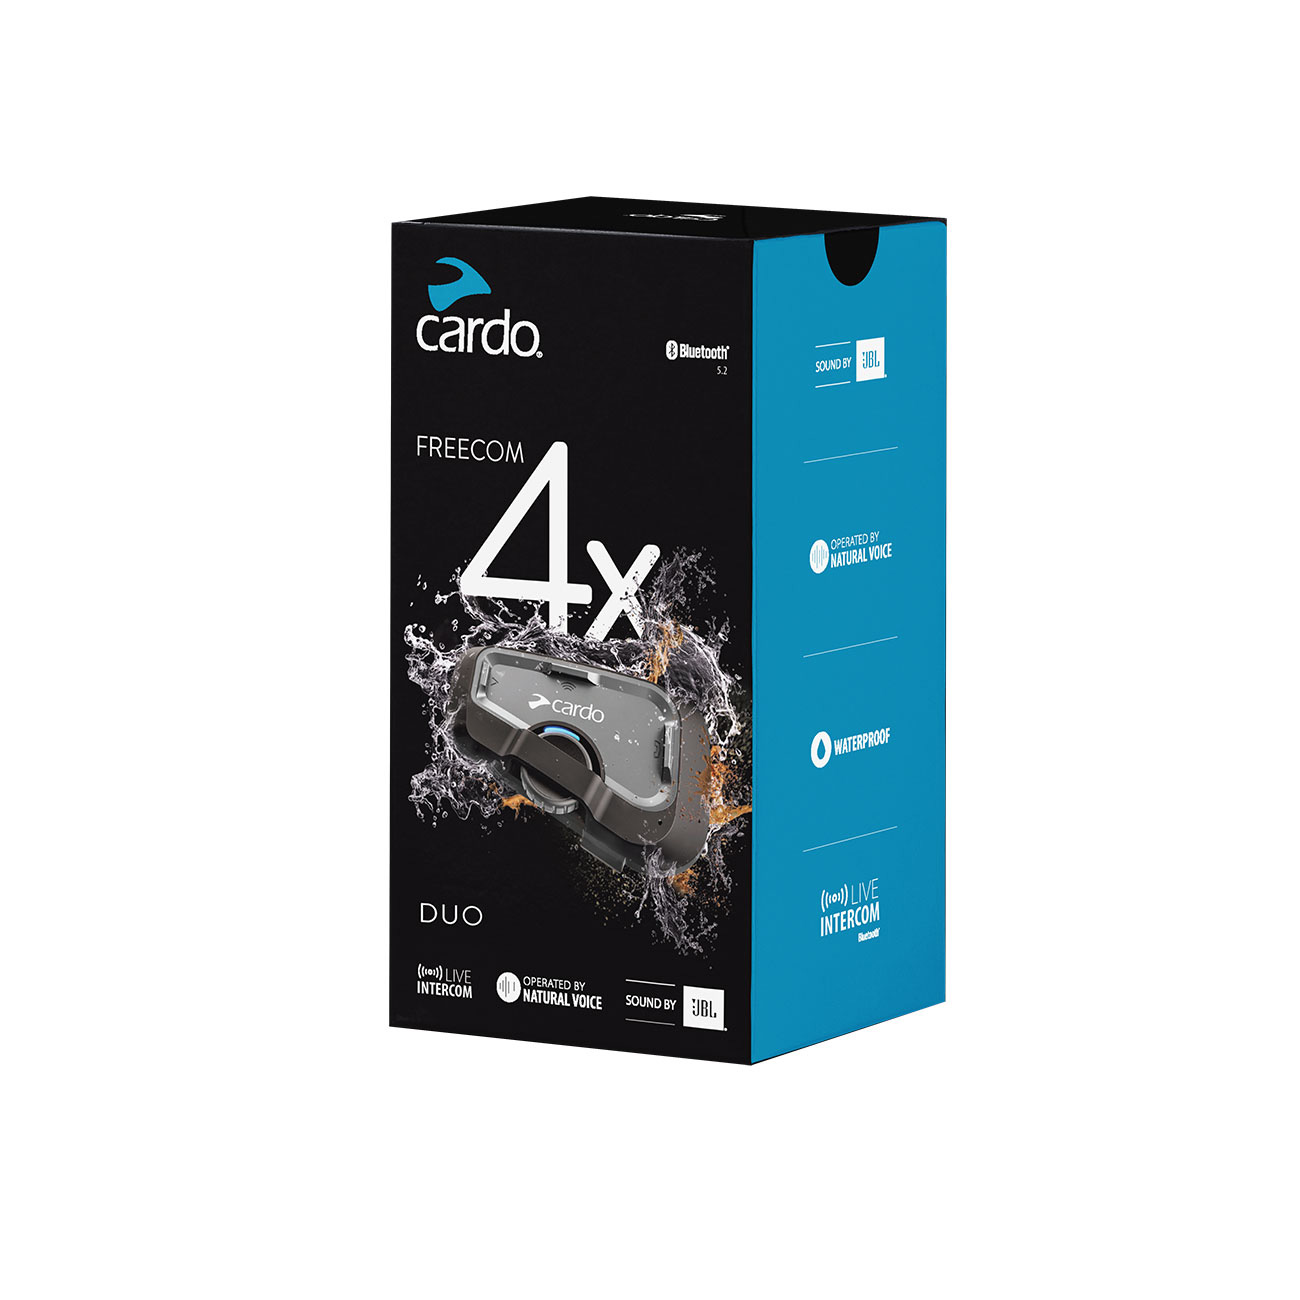 Cardo Freecom 4x Duobox (2 Geräte)